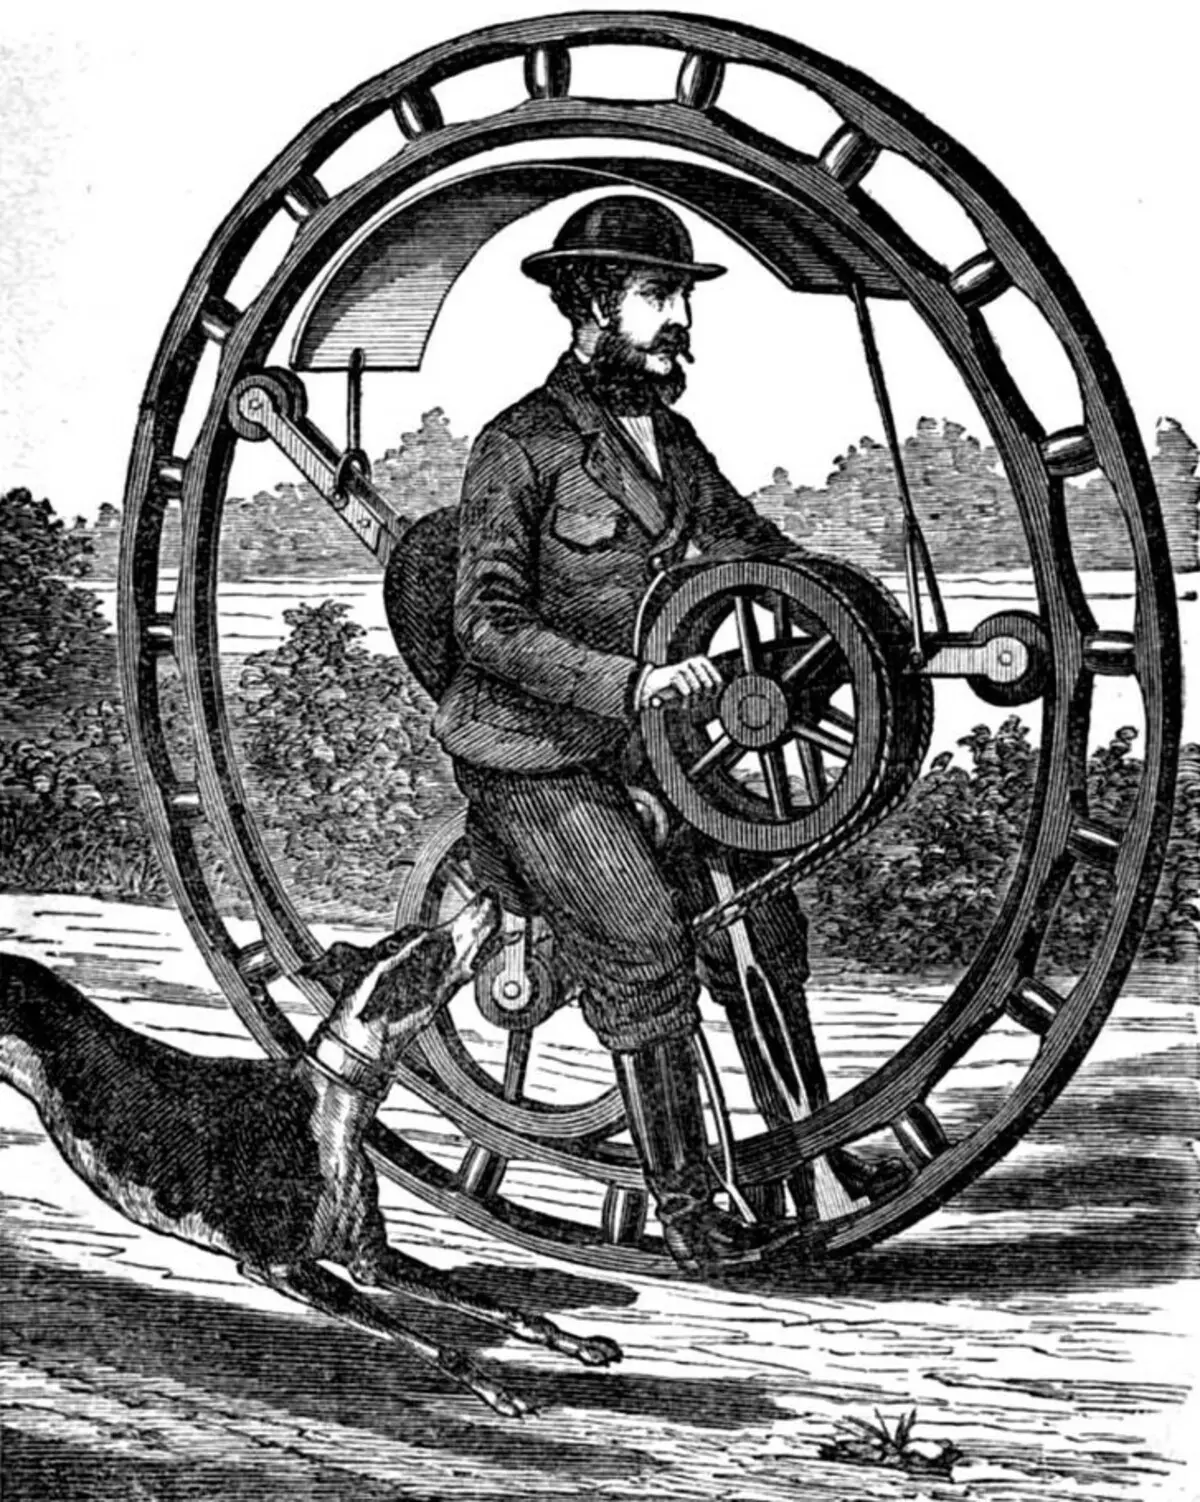 Monocili: Cili është emri i unicycle (biçikletë e vetme)? Përmbledhje e modeleve elektrike. Si të mësoni të ngasin? 26188_11